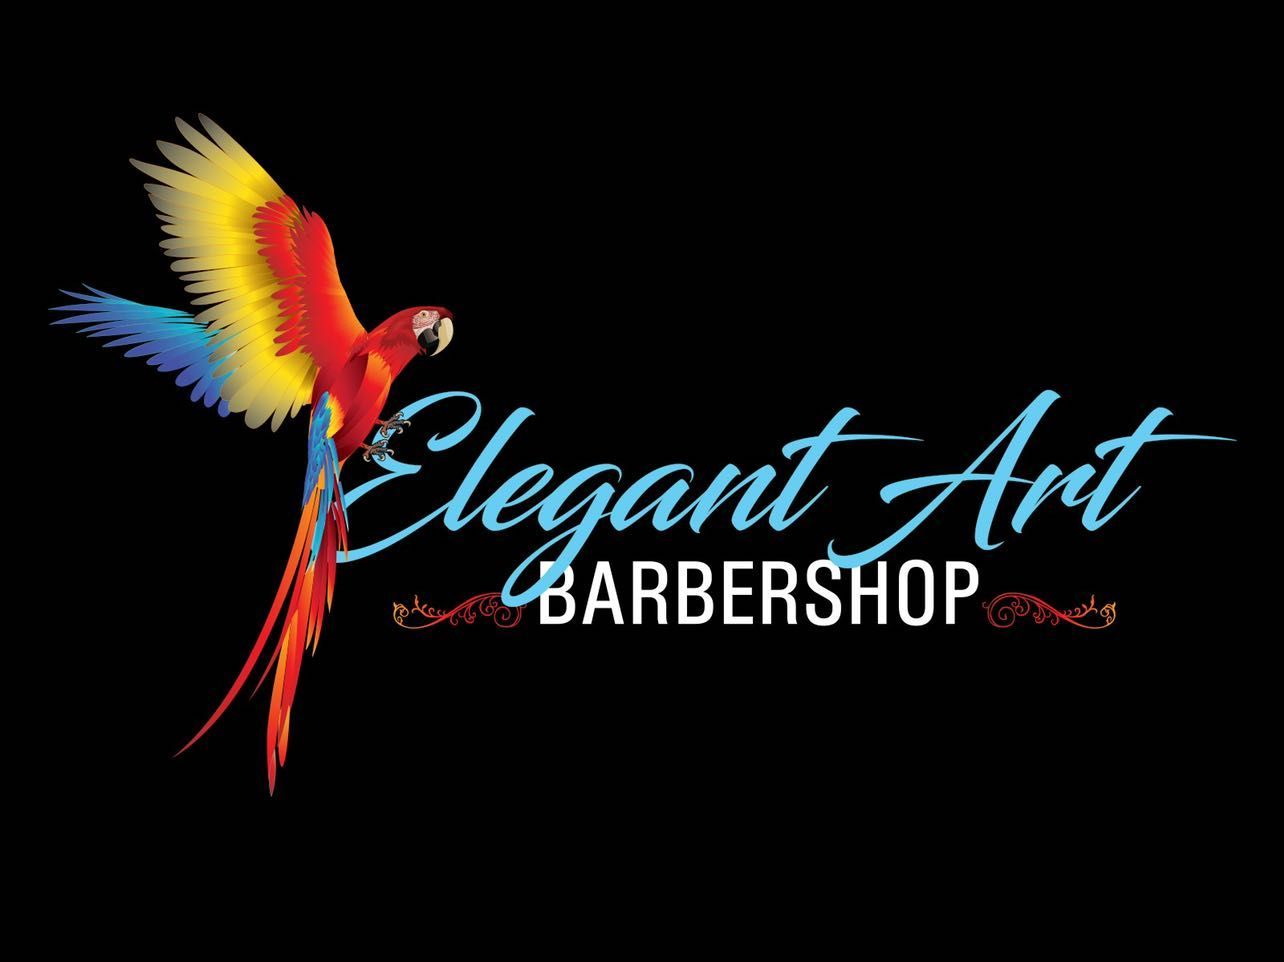 Elegant Art barbershop, 6869 Springfield Blvd Springfield, VA, Springfield, 22150